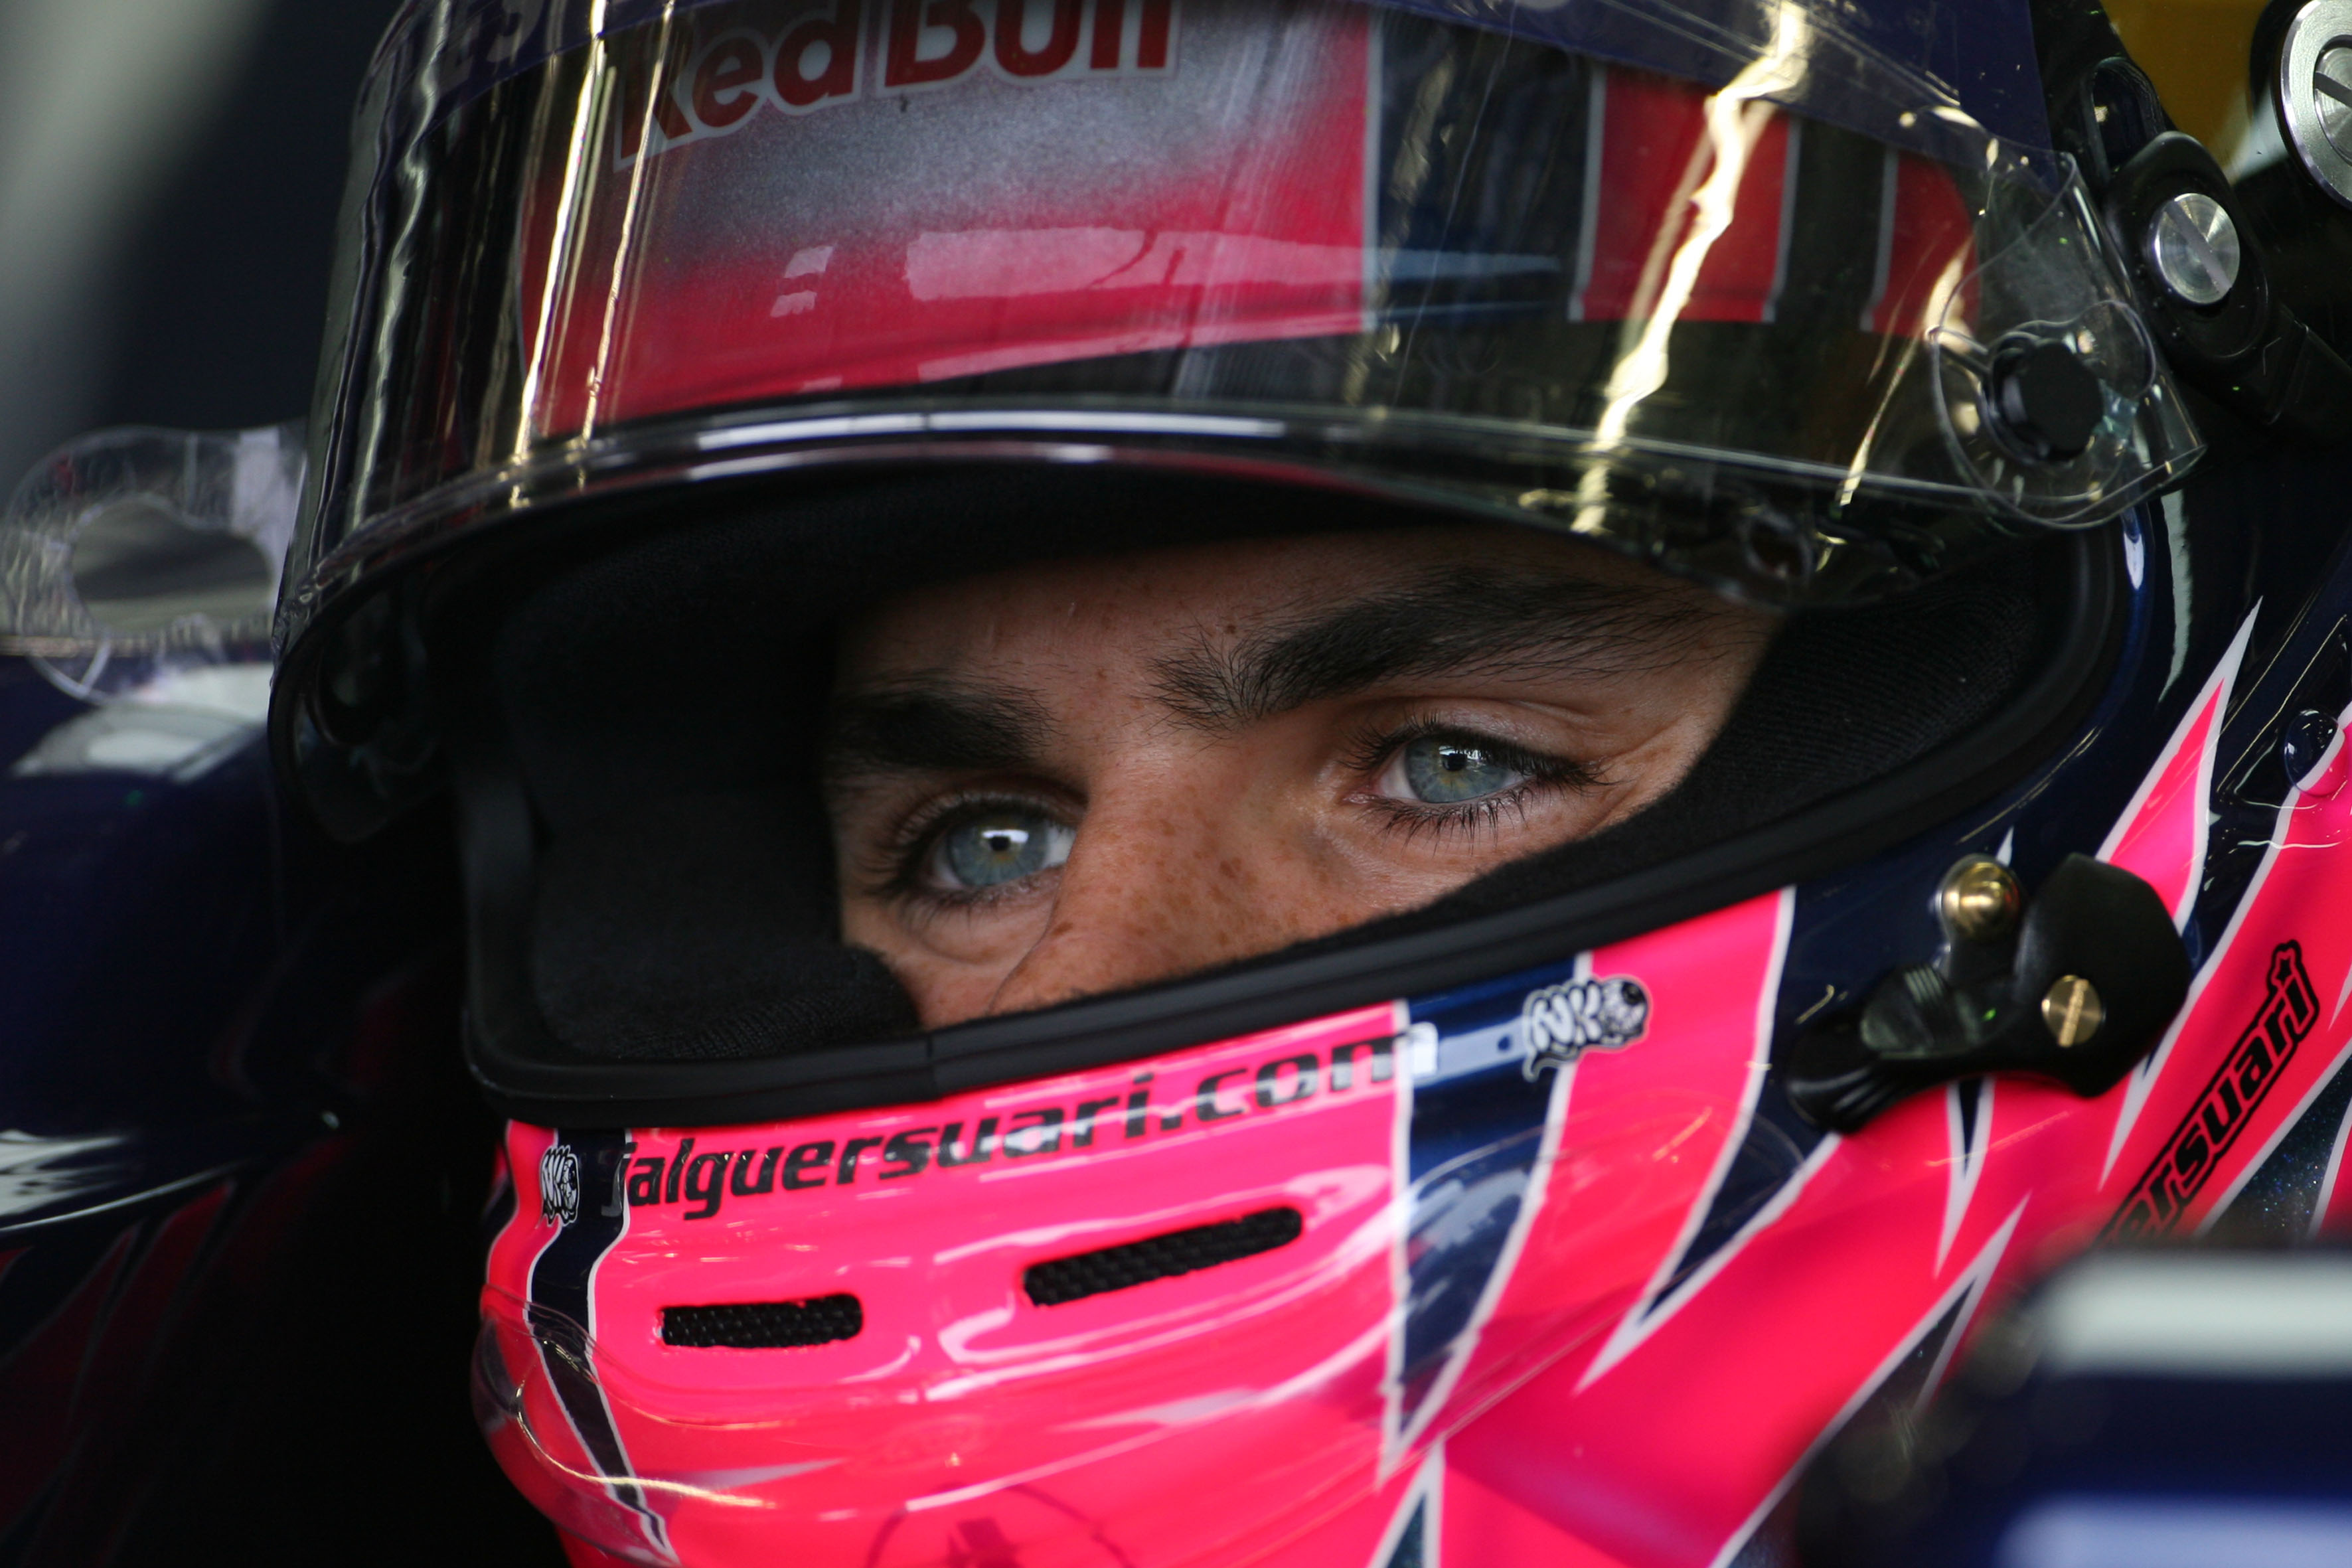 Alguersuari: ‘Toro Rosso wordt steeds beter’